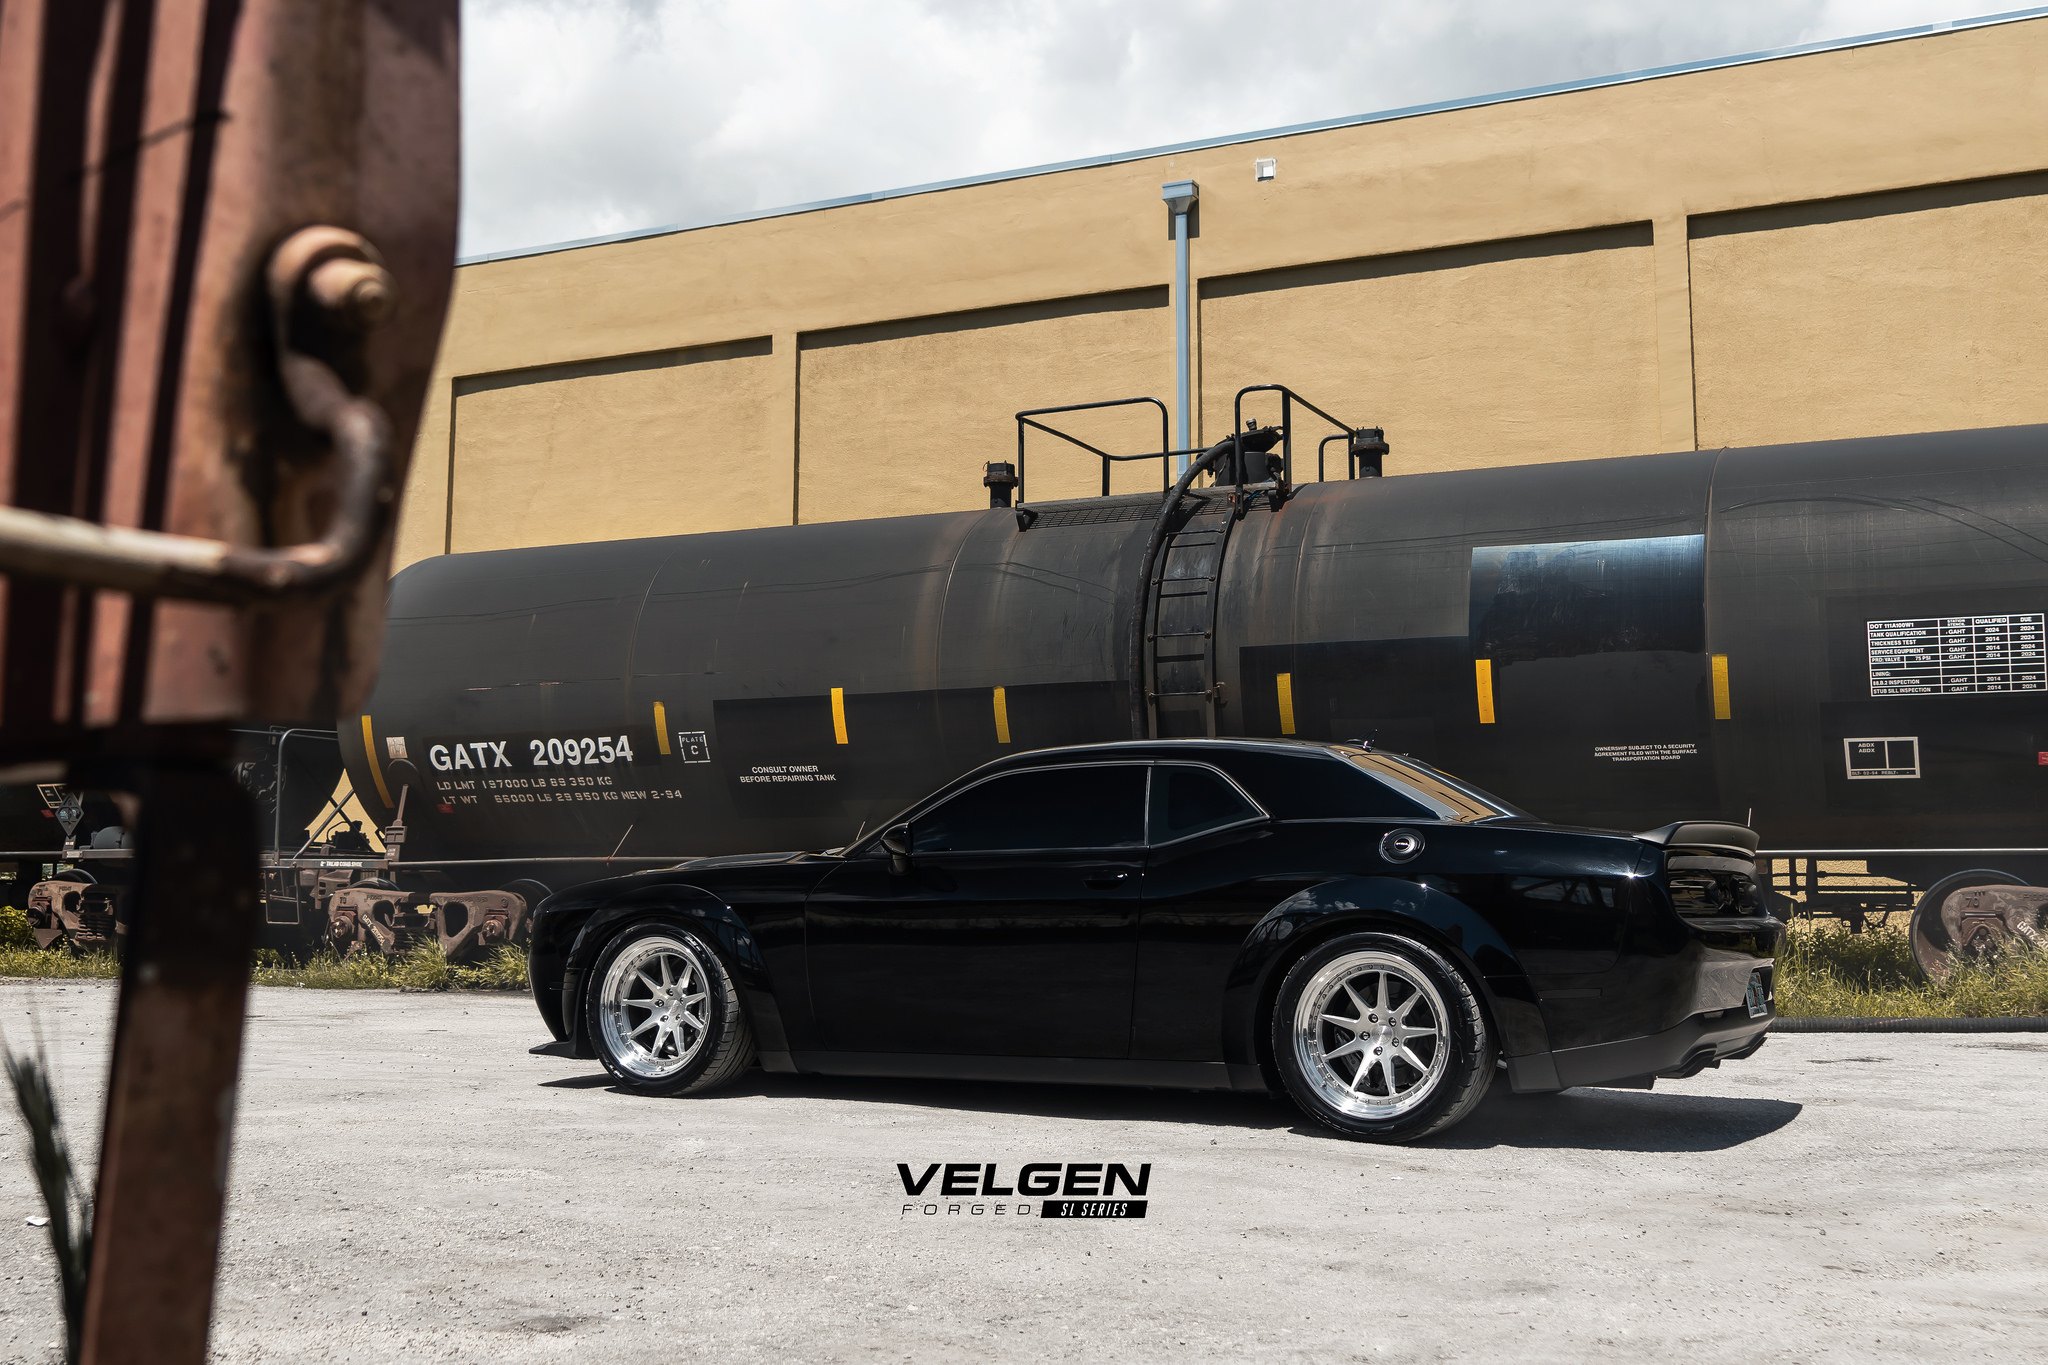 Velgen SL Series Rims on Black Dodge Challenger - Photo by Velgen Wheels